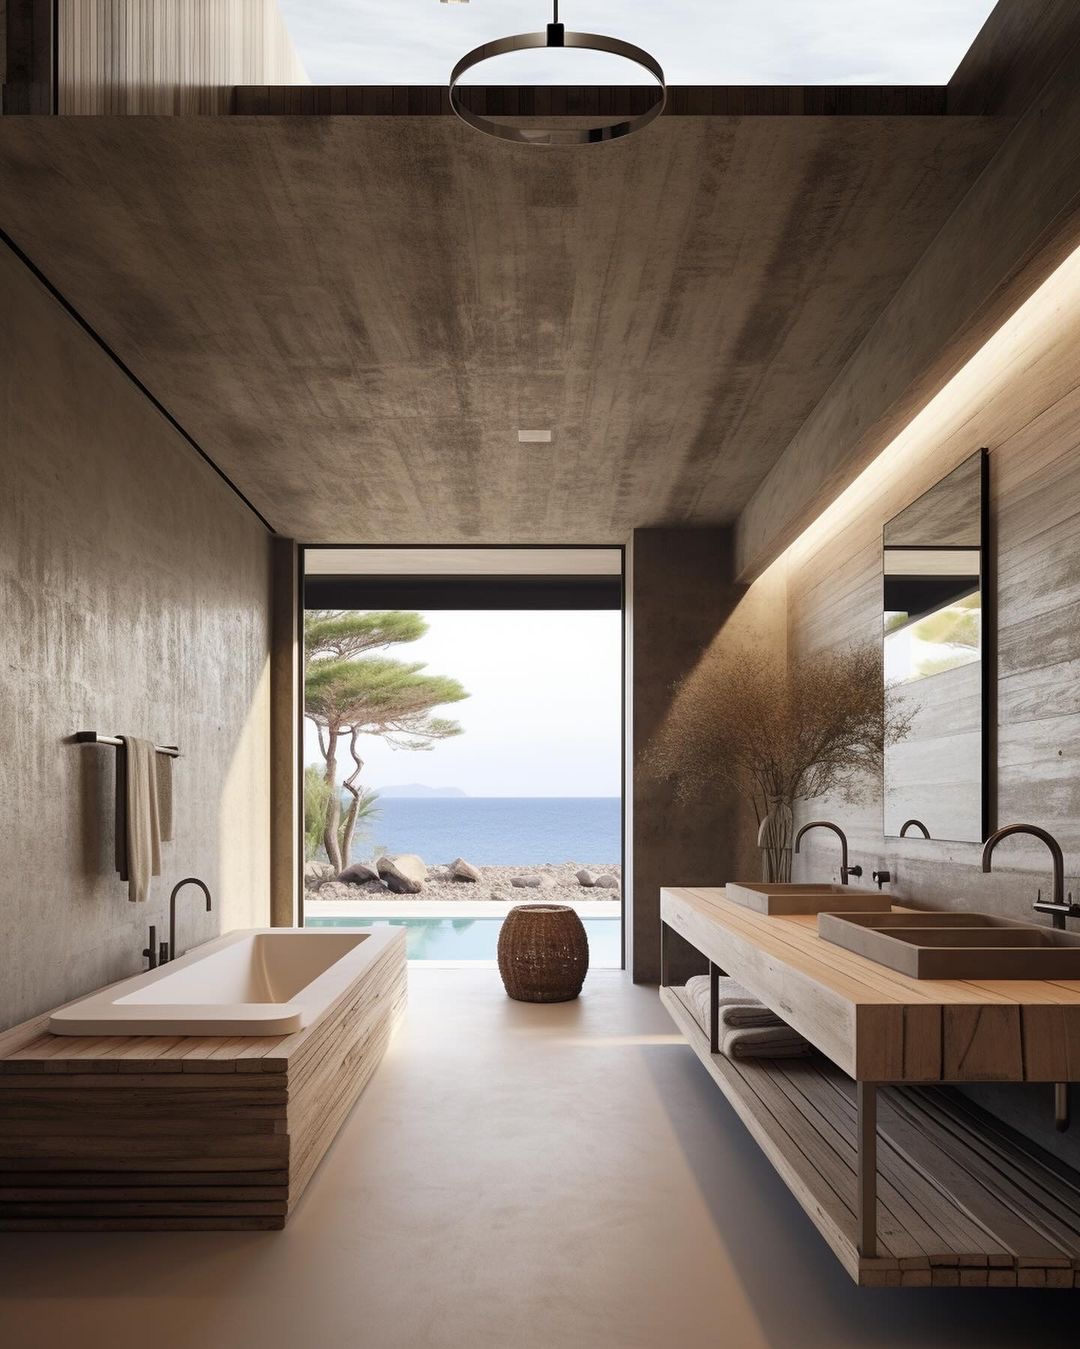 Spa Like Bathroom Concrete Walls and Coastal Views